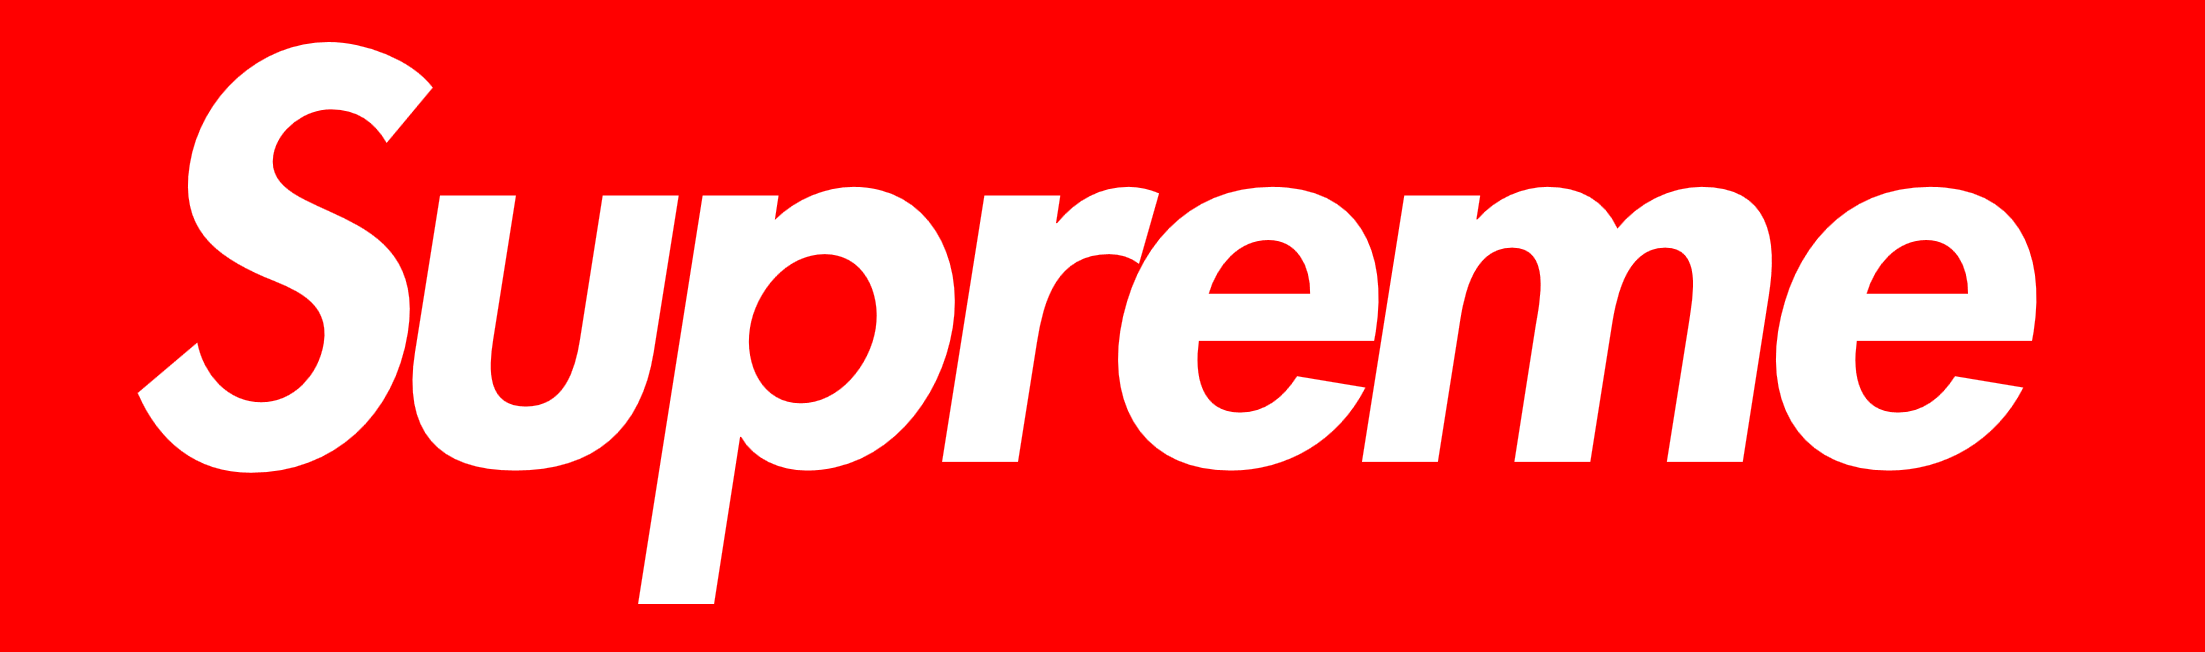 Supreme logo, logotype